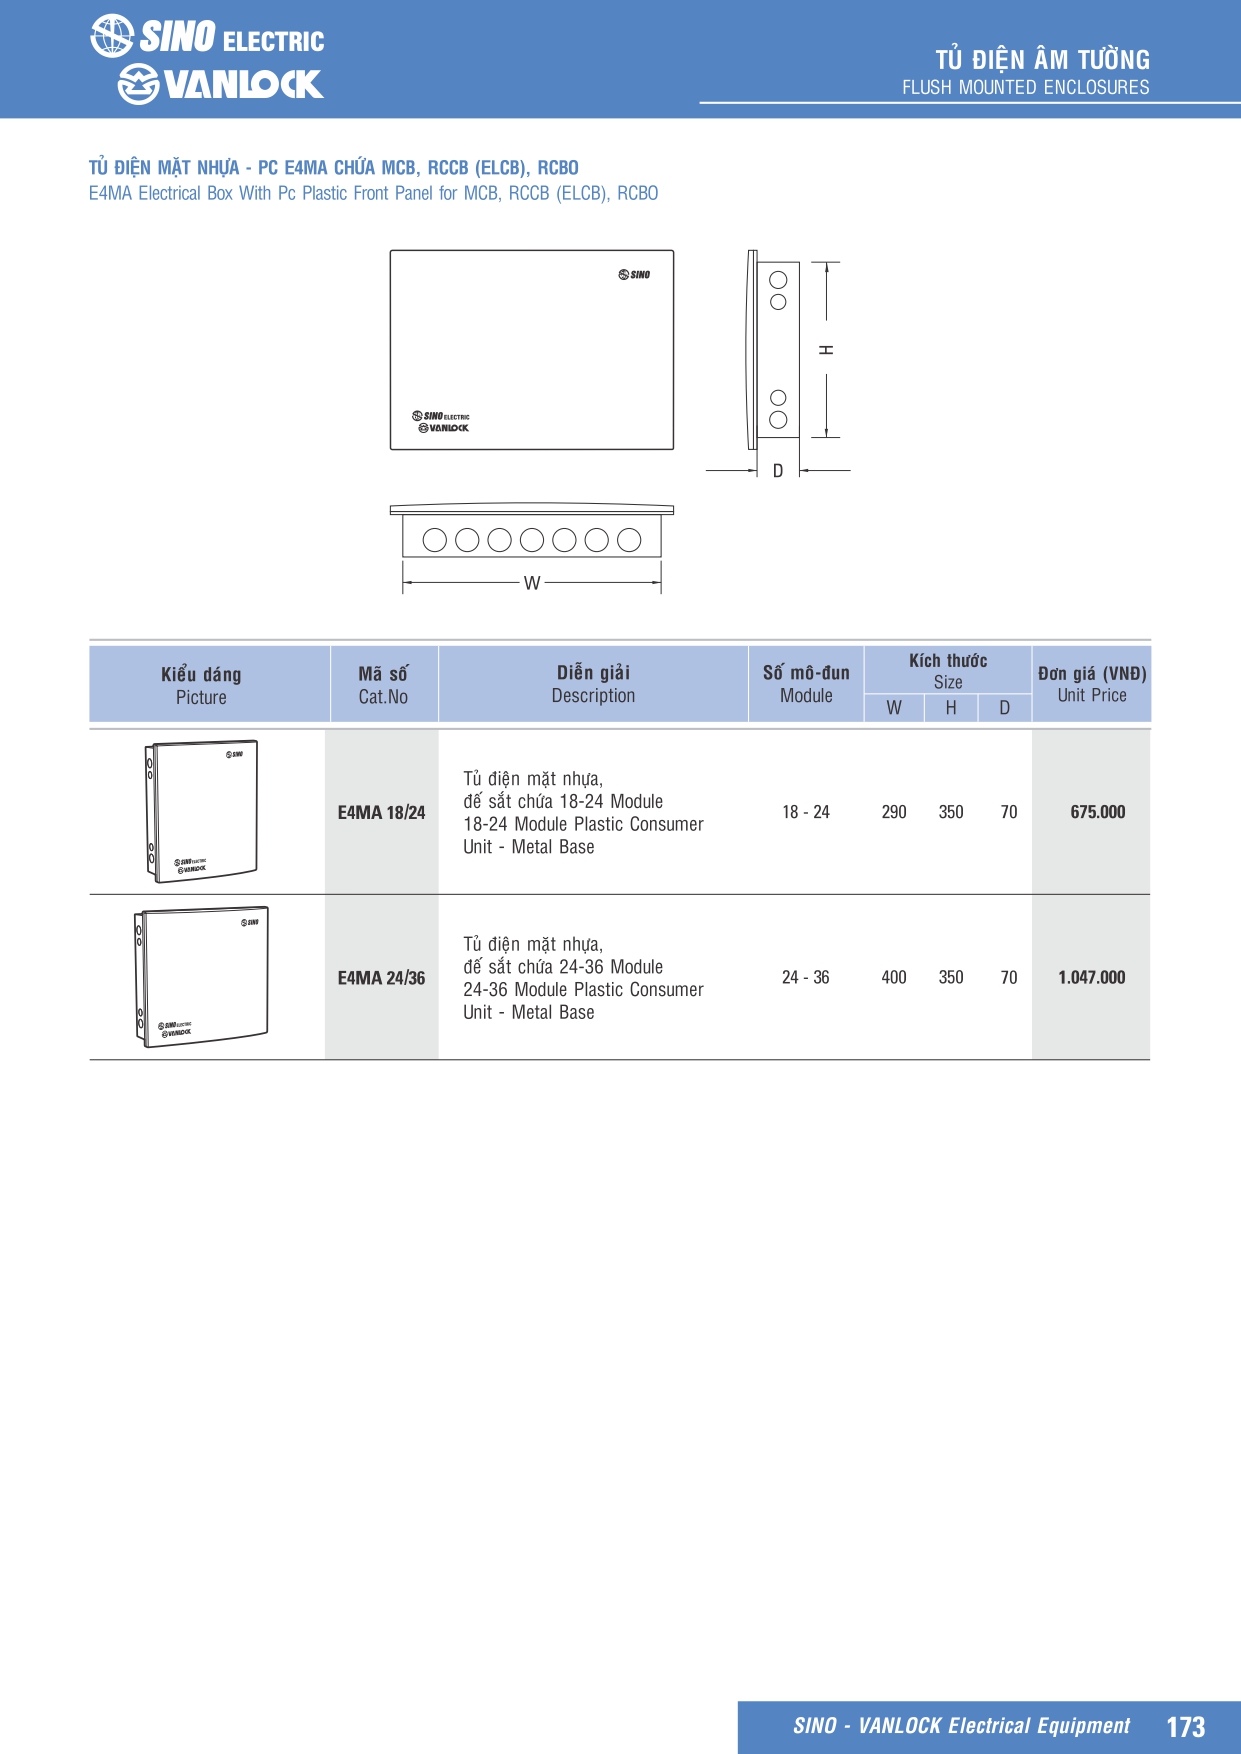 Tủ điện Sino – Vanlock là một sản phẩm tủ điện chất lượng cao được sản xuất bởi công ty Sino – Vanlock. Tủ điện này được thiết kế để đáp ứng các yêu cầu về an toàn và hiệu suất trong việc điều khiển và bảo vệ các thiết bị điện trong hệ thống điện. Tủ điện Sino – Vanlock được sử dụng rộng rãi trong các ngành công nghiệp, nhà máy, tòa nhà và các công trình xây dựng khác. Đặc điểm nổi bật của tủ điện Sino – Vanlock bao gồm độ bền cao, tính ổn định, dễ lắp đặt và vận hành, đảm bảo an toàn cho người sử dụng và thiết bị điện. Bảng giá tủ điện Sino Vanlock 2024